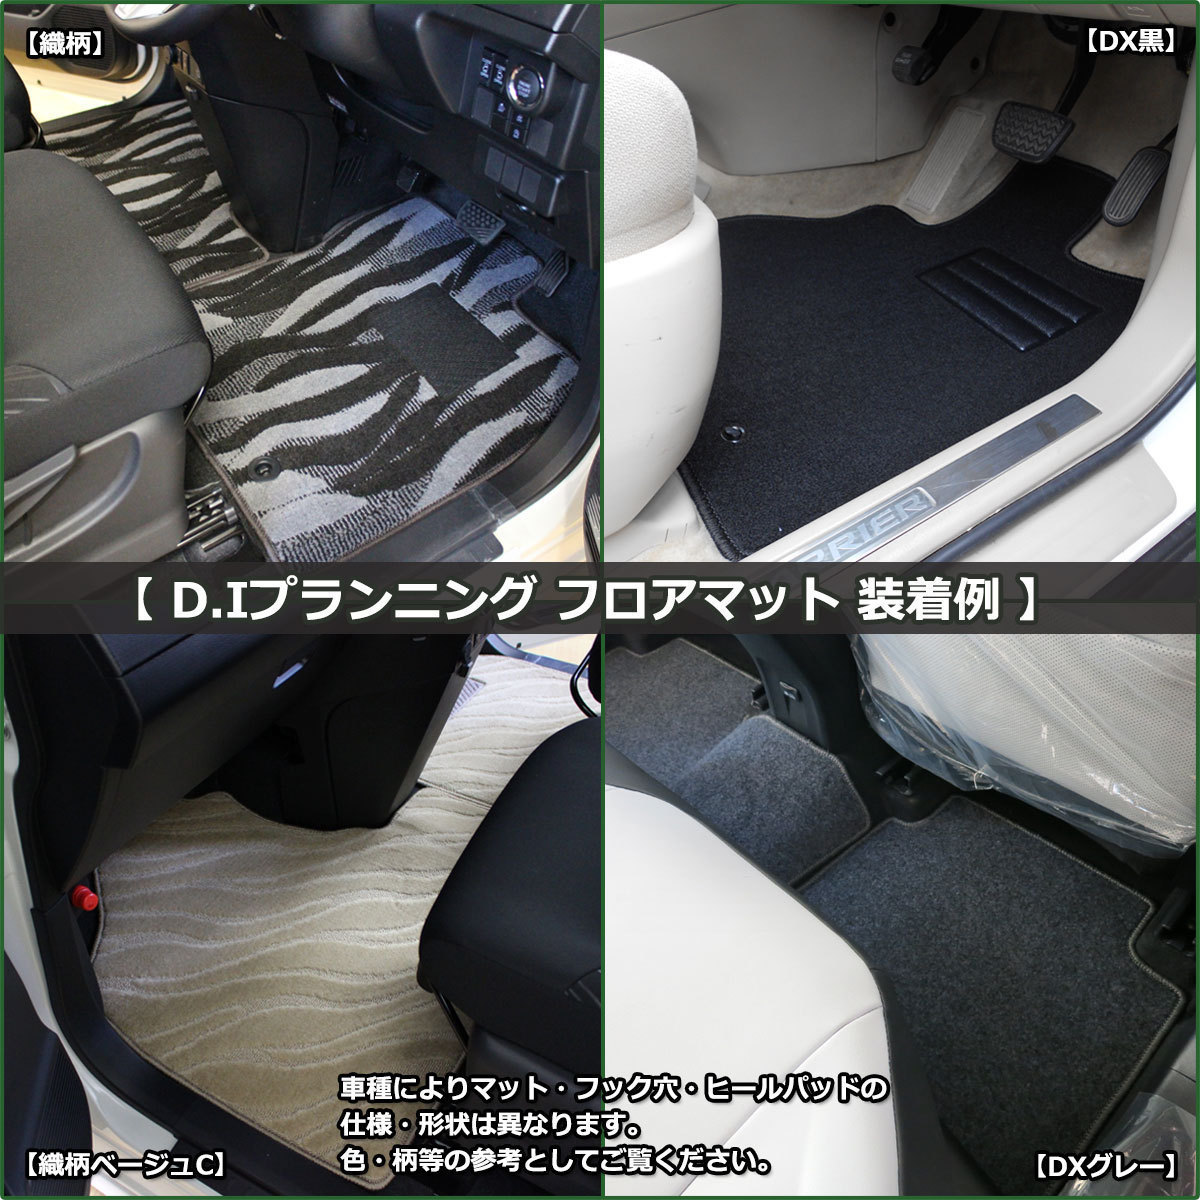  Lexus LBX прохладный relax MAYH10 MAYH15 коврик на пол DX коврик на пол пол чехол для сиденья пол ковровое покрытие автомобиль детали 